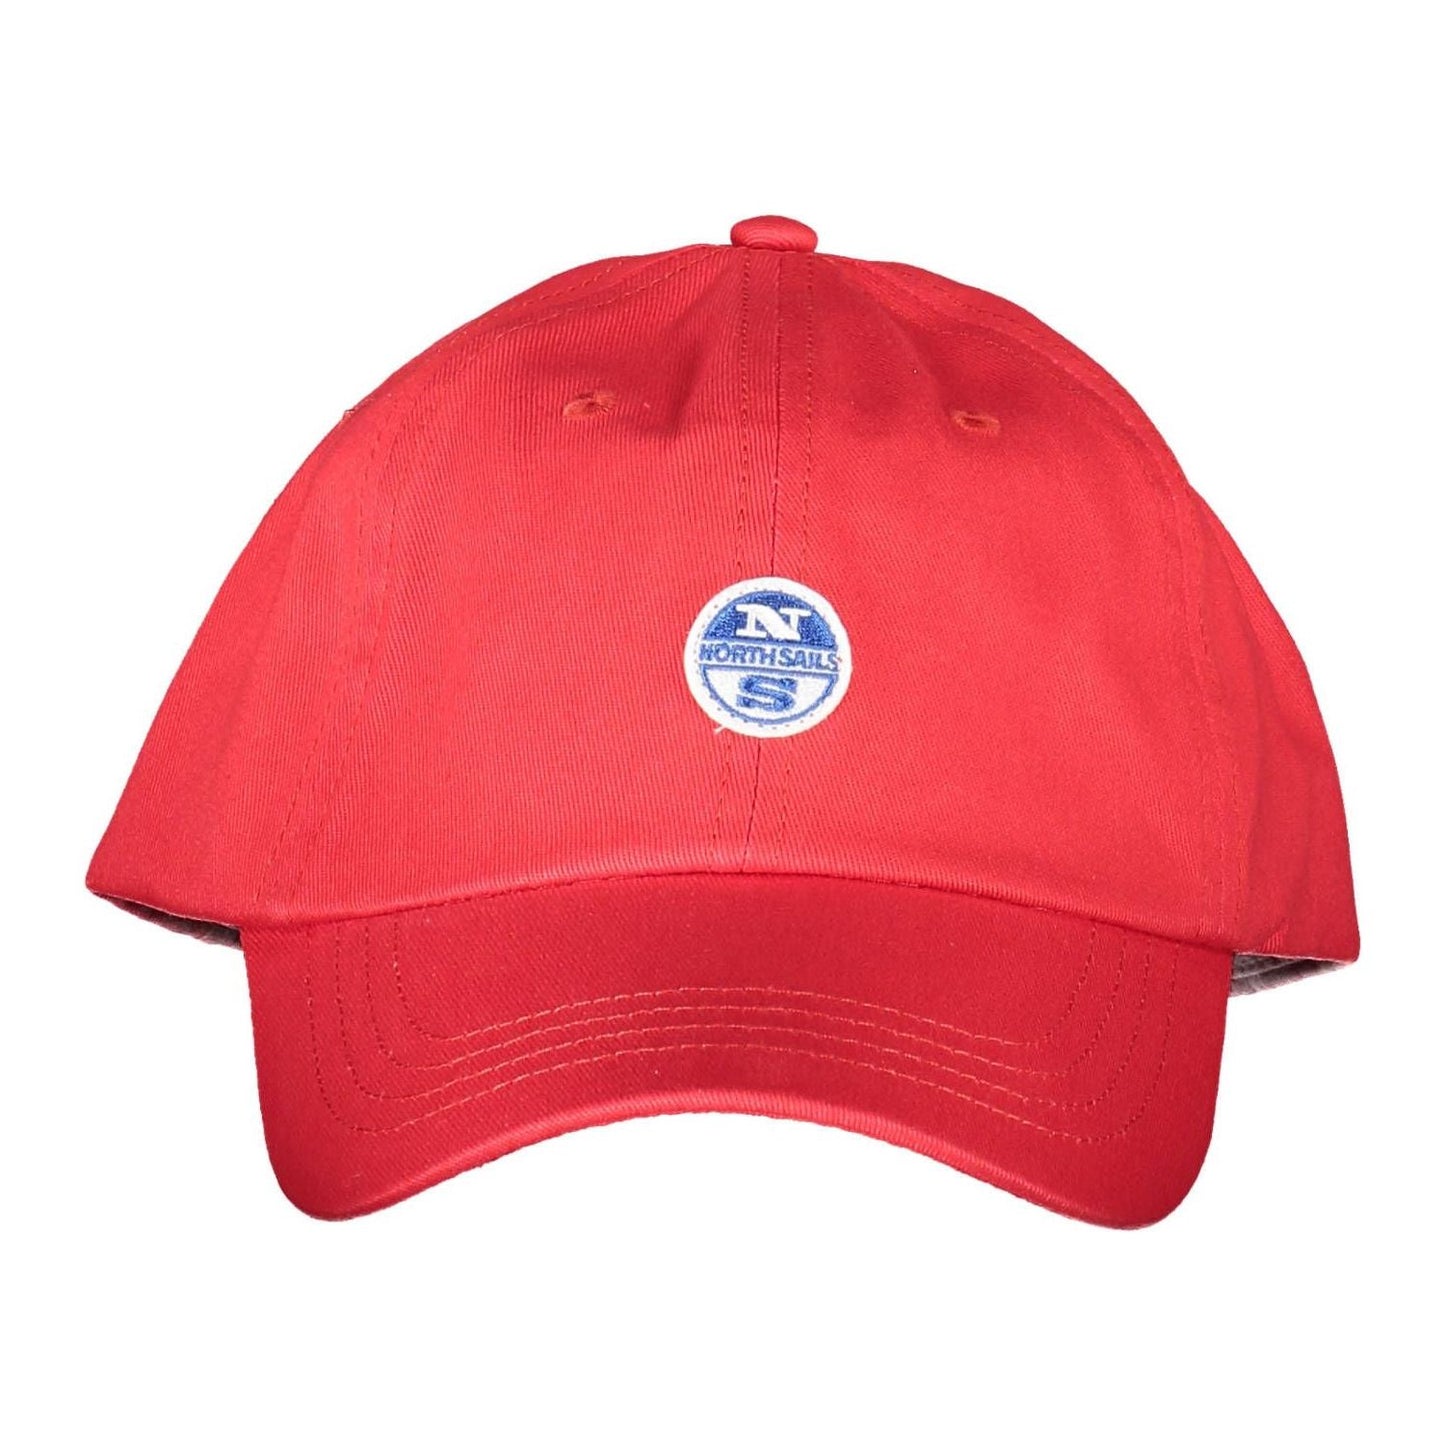 North Sails Elegant Red Cotton Cap with Logo Visor elegant-red-cotton-cap-with-logo-visor